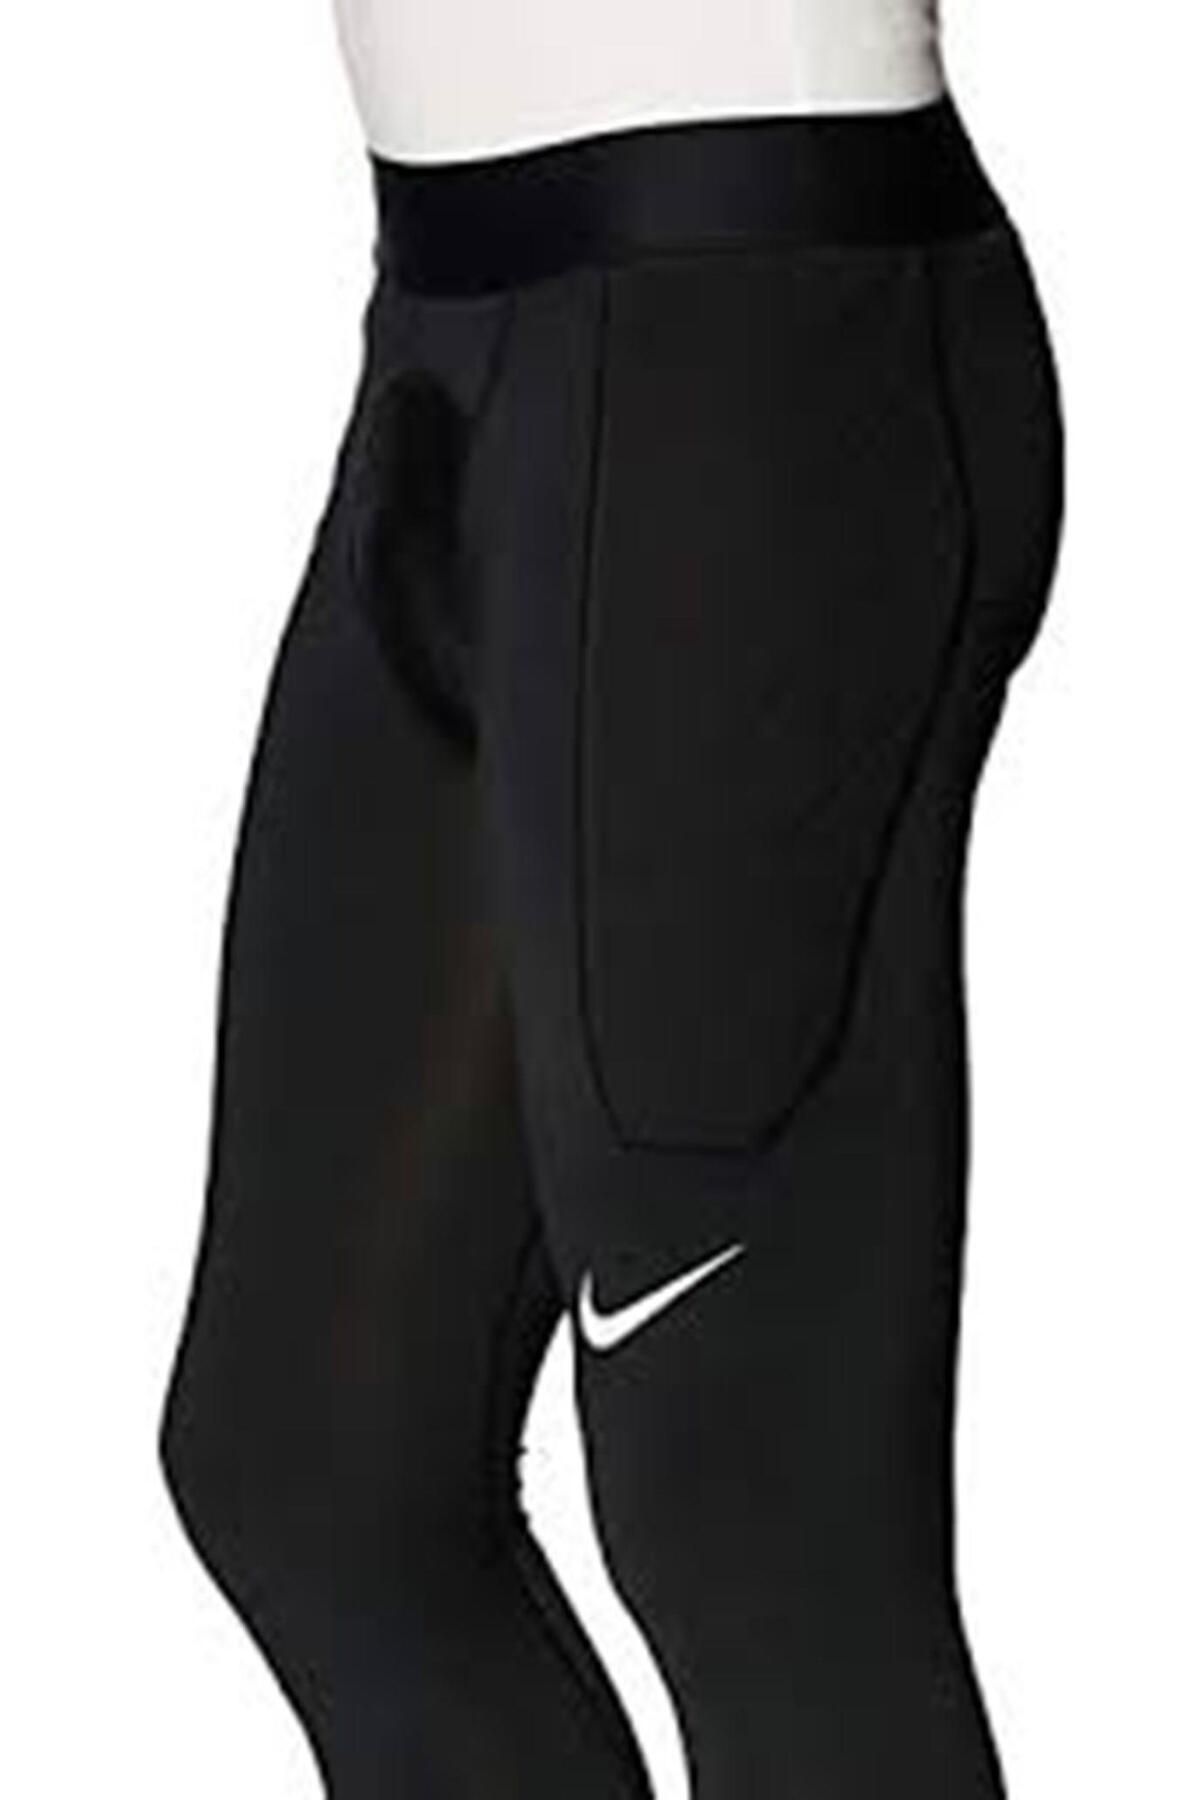 Nike Dry Pad Grdn - Erkek Siyah Spor Tayt - Cv0045-010